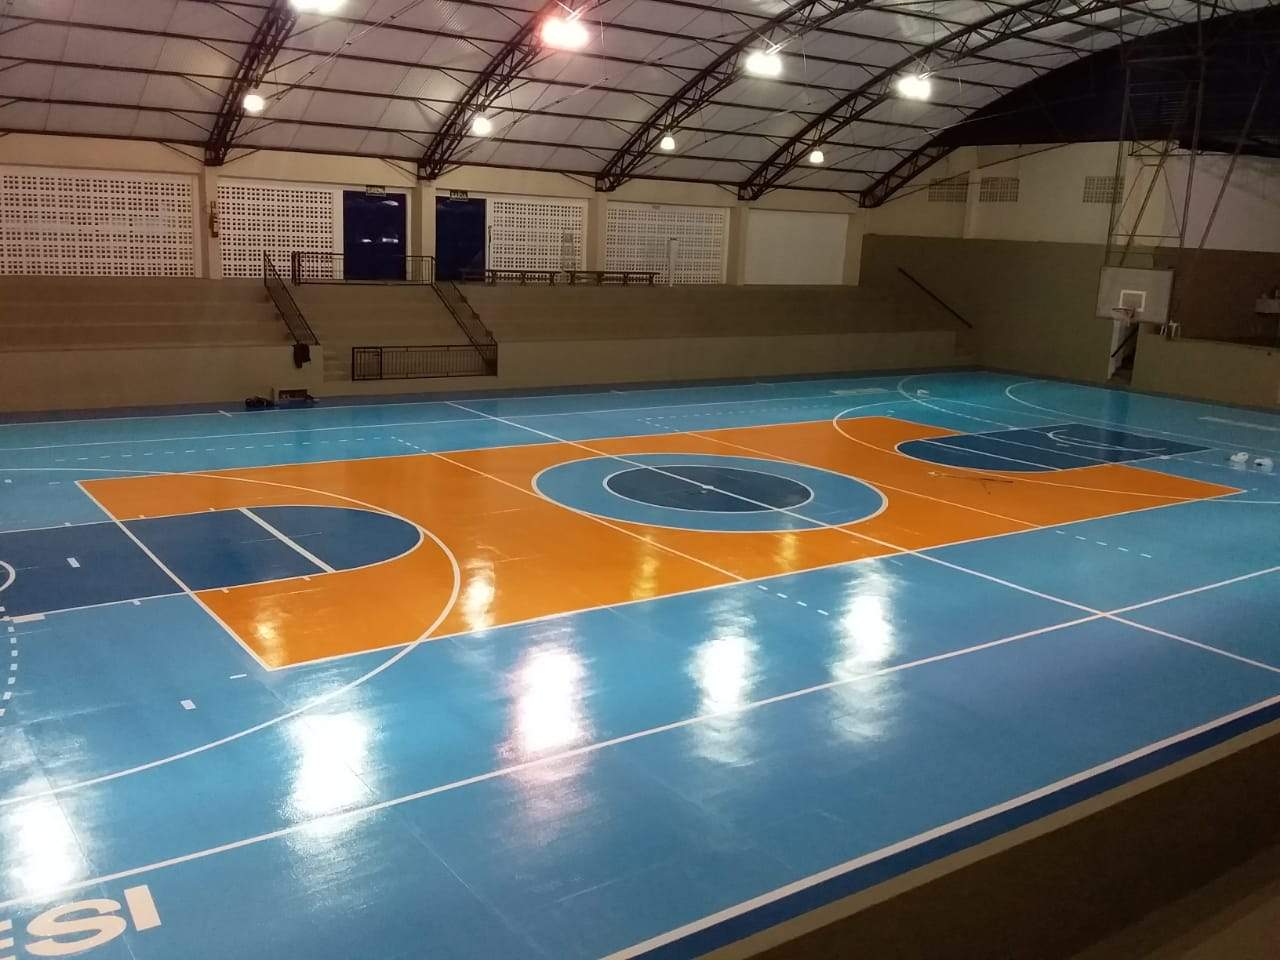 Ginásio da escola quadra de basquete do ginásio e arena de futebol